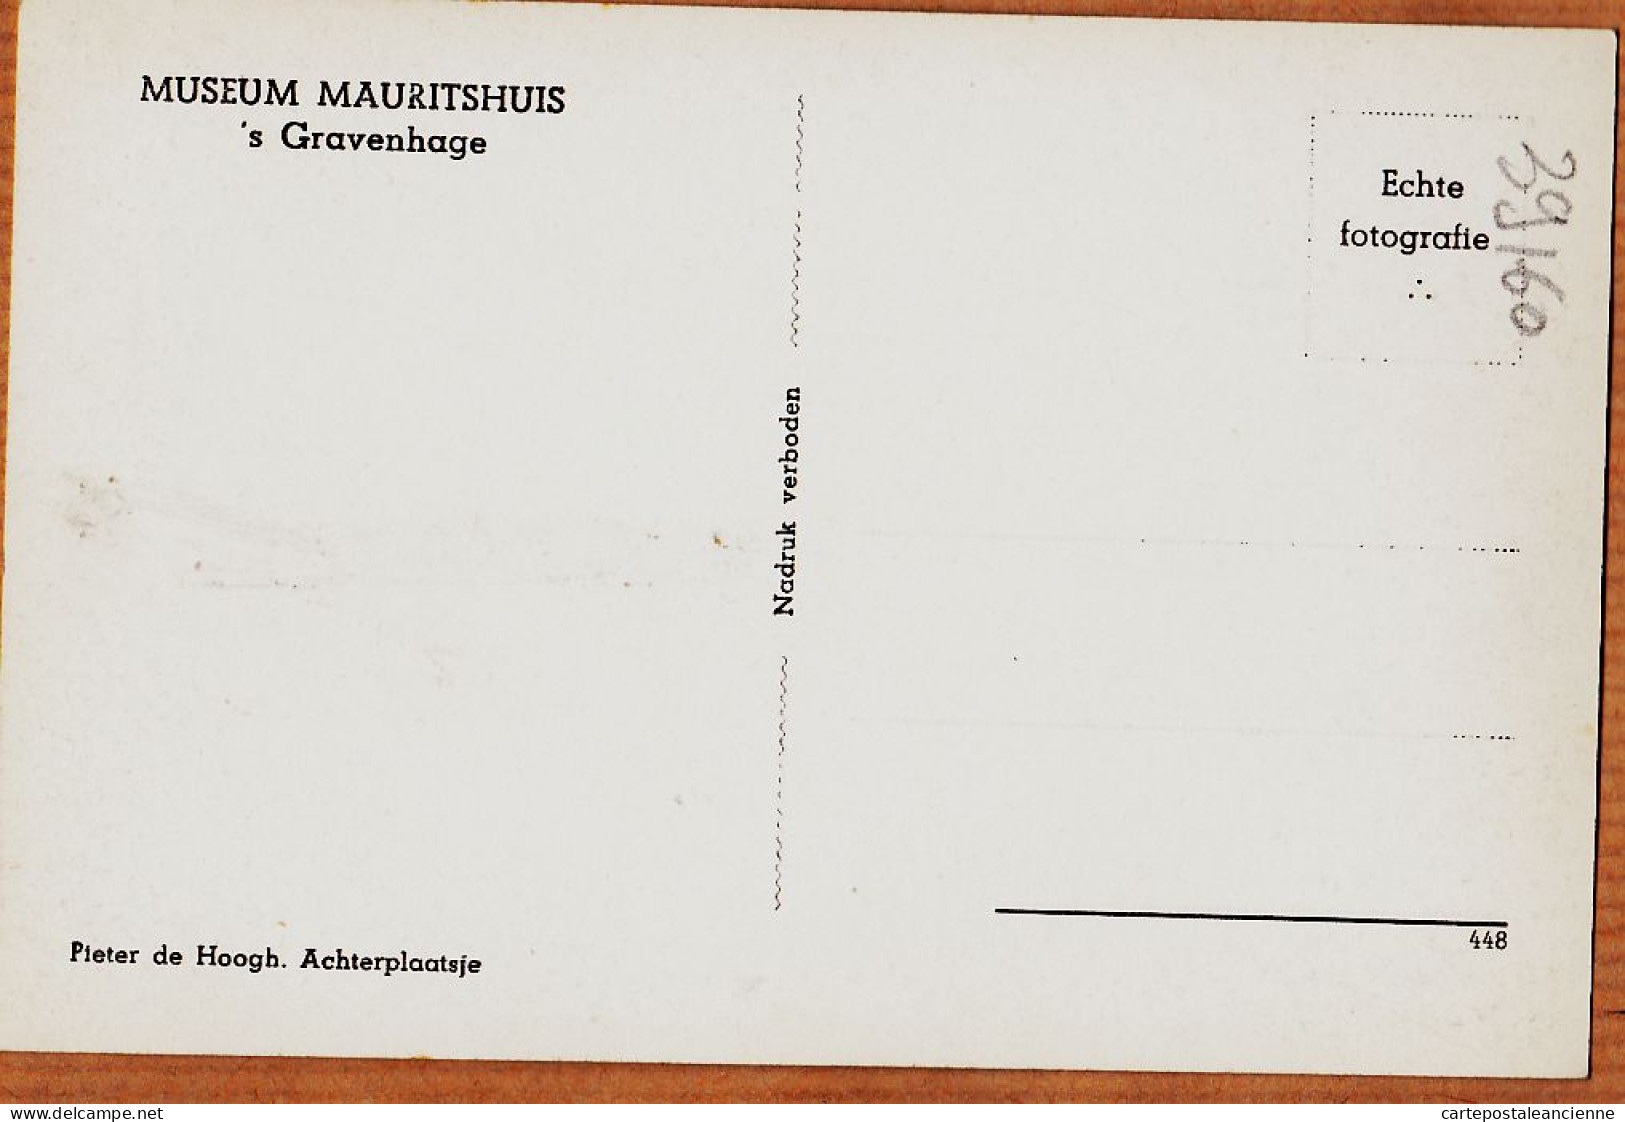 07578 ● 'S GRAVENHAGE Zuid-Holland Pieter De HOOG Achterplaatsje Museum MAURITSHUIS 1950s Foto-Bromure 448 - Den Haag ('s-Gravenhage)